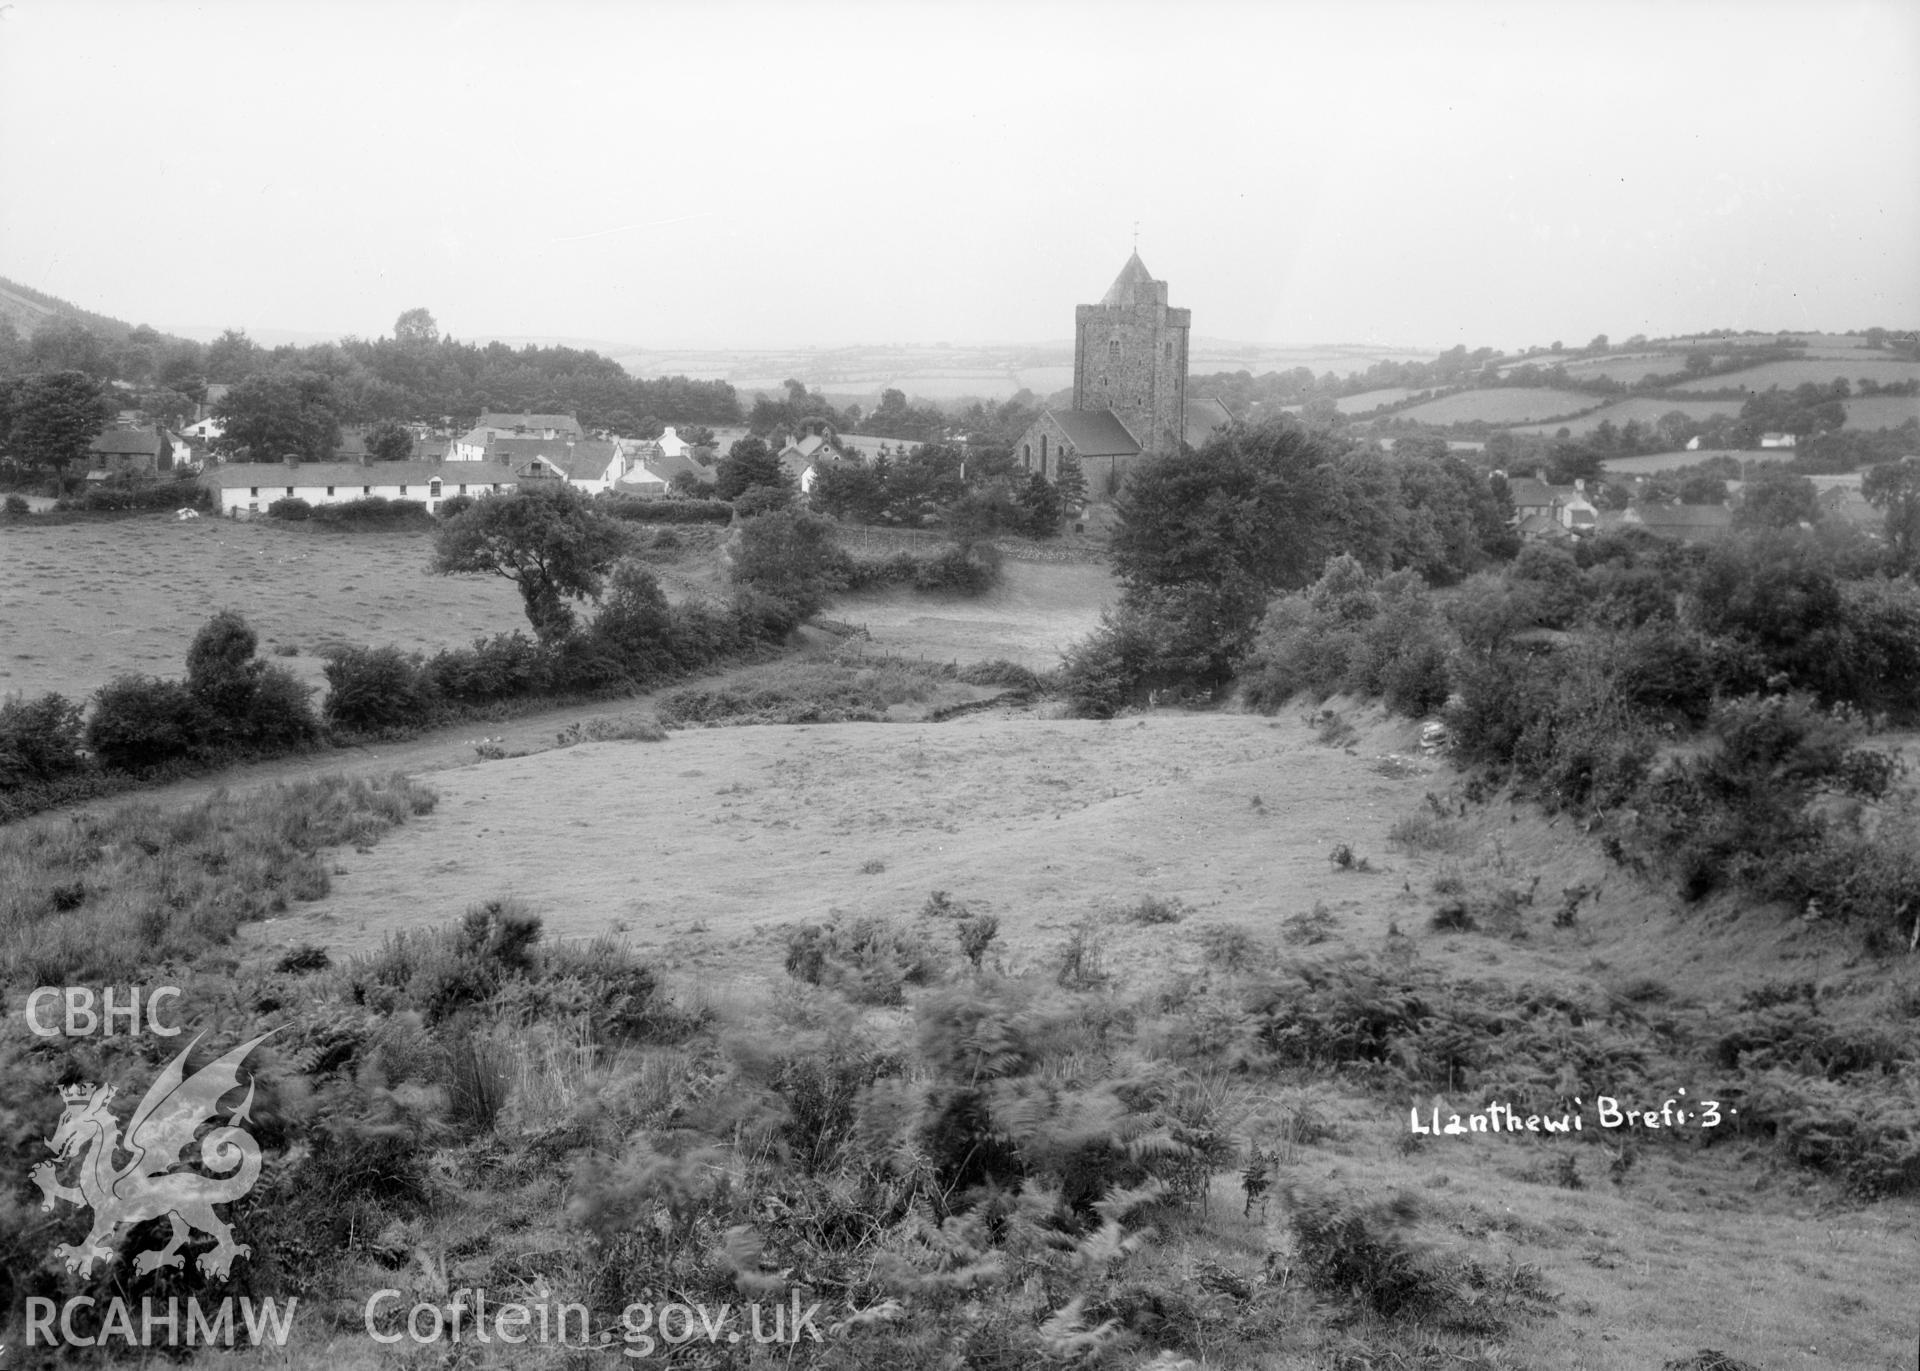 Landscape view of Llanddewi Brefi taken by W A Call circa 1920.